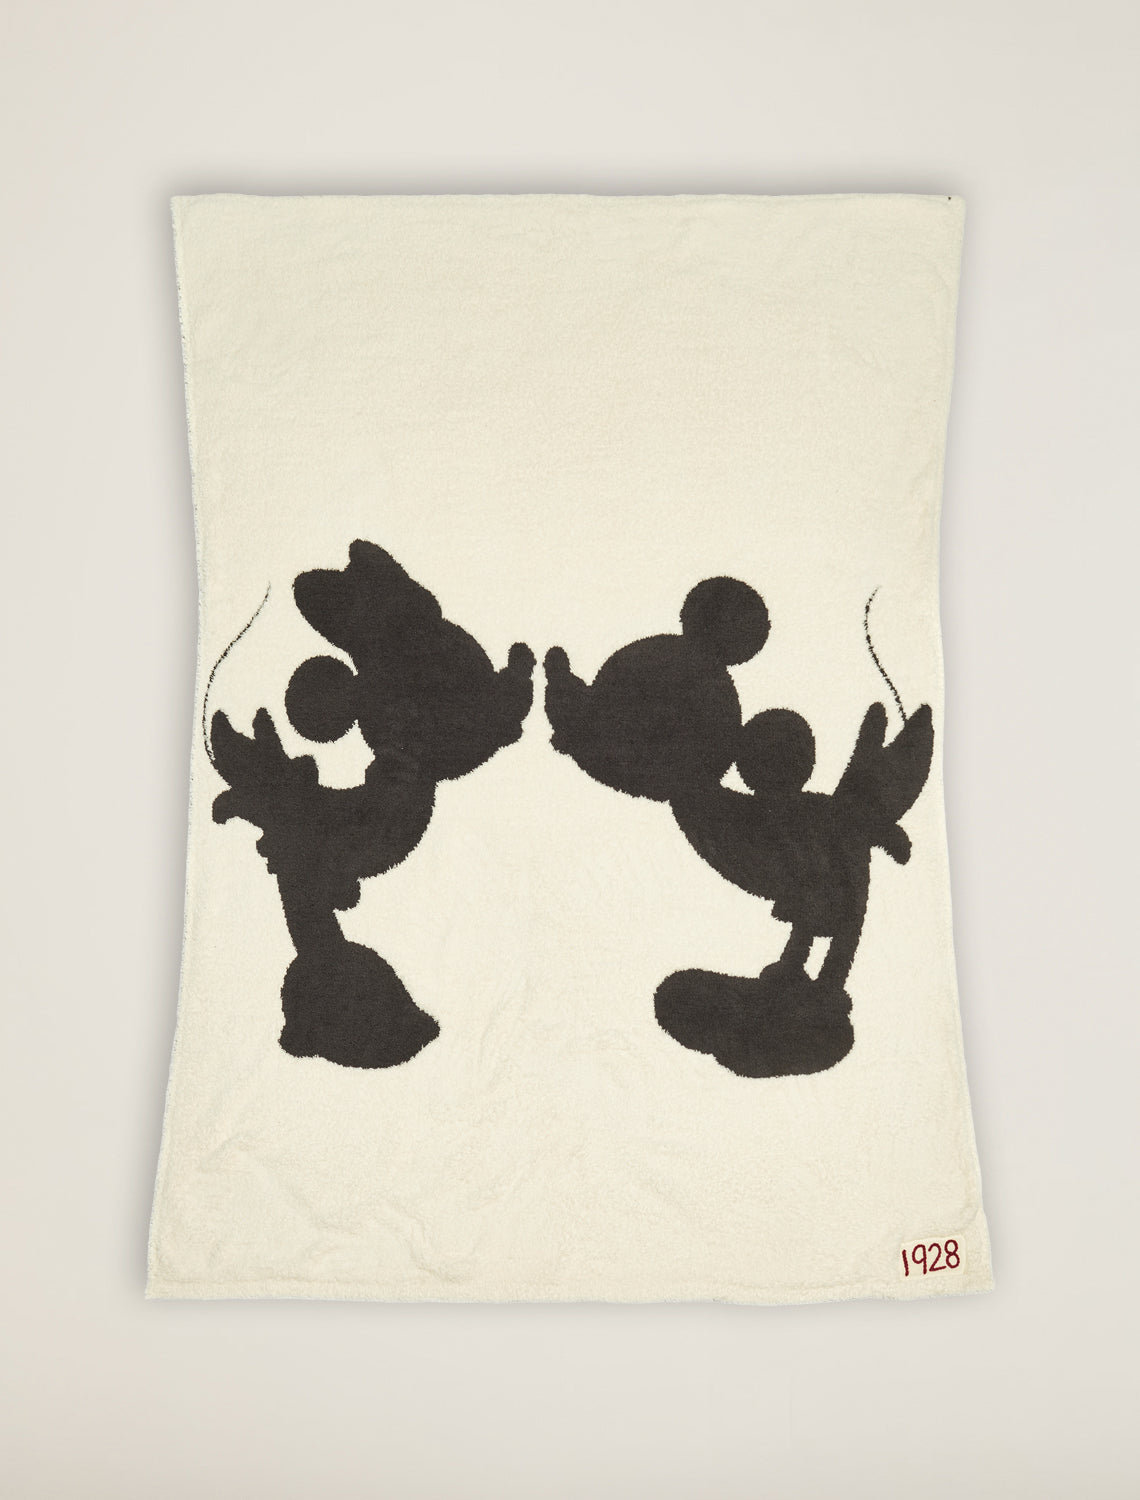 CozyChic® Classic Disney Mickey & Minnie Mouse Blanket - 45 x 60